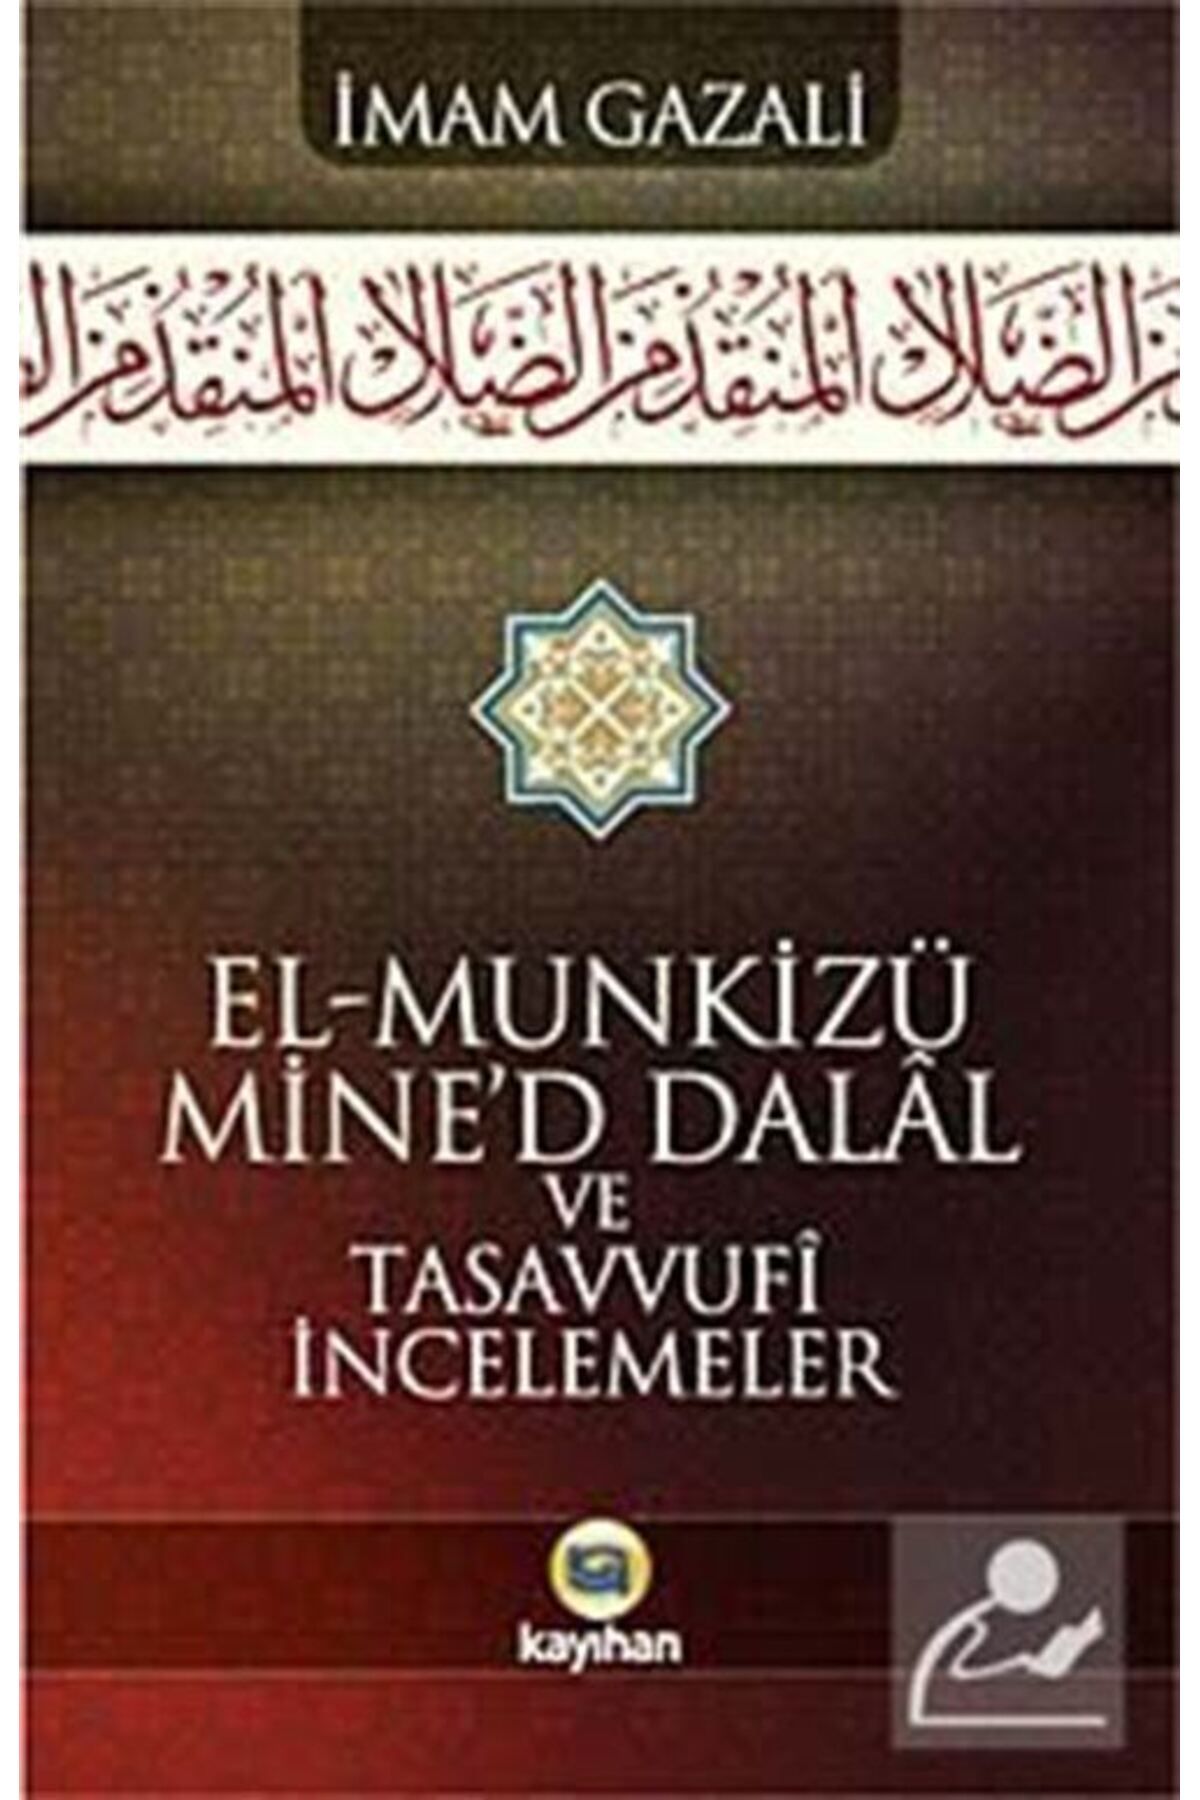 Kayıhan Yayınları El-munkizü Mine'd Dalal Şerhi Ve Tasavvufi Incelemeler (KARTON KAPAK)